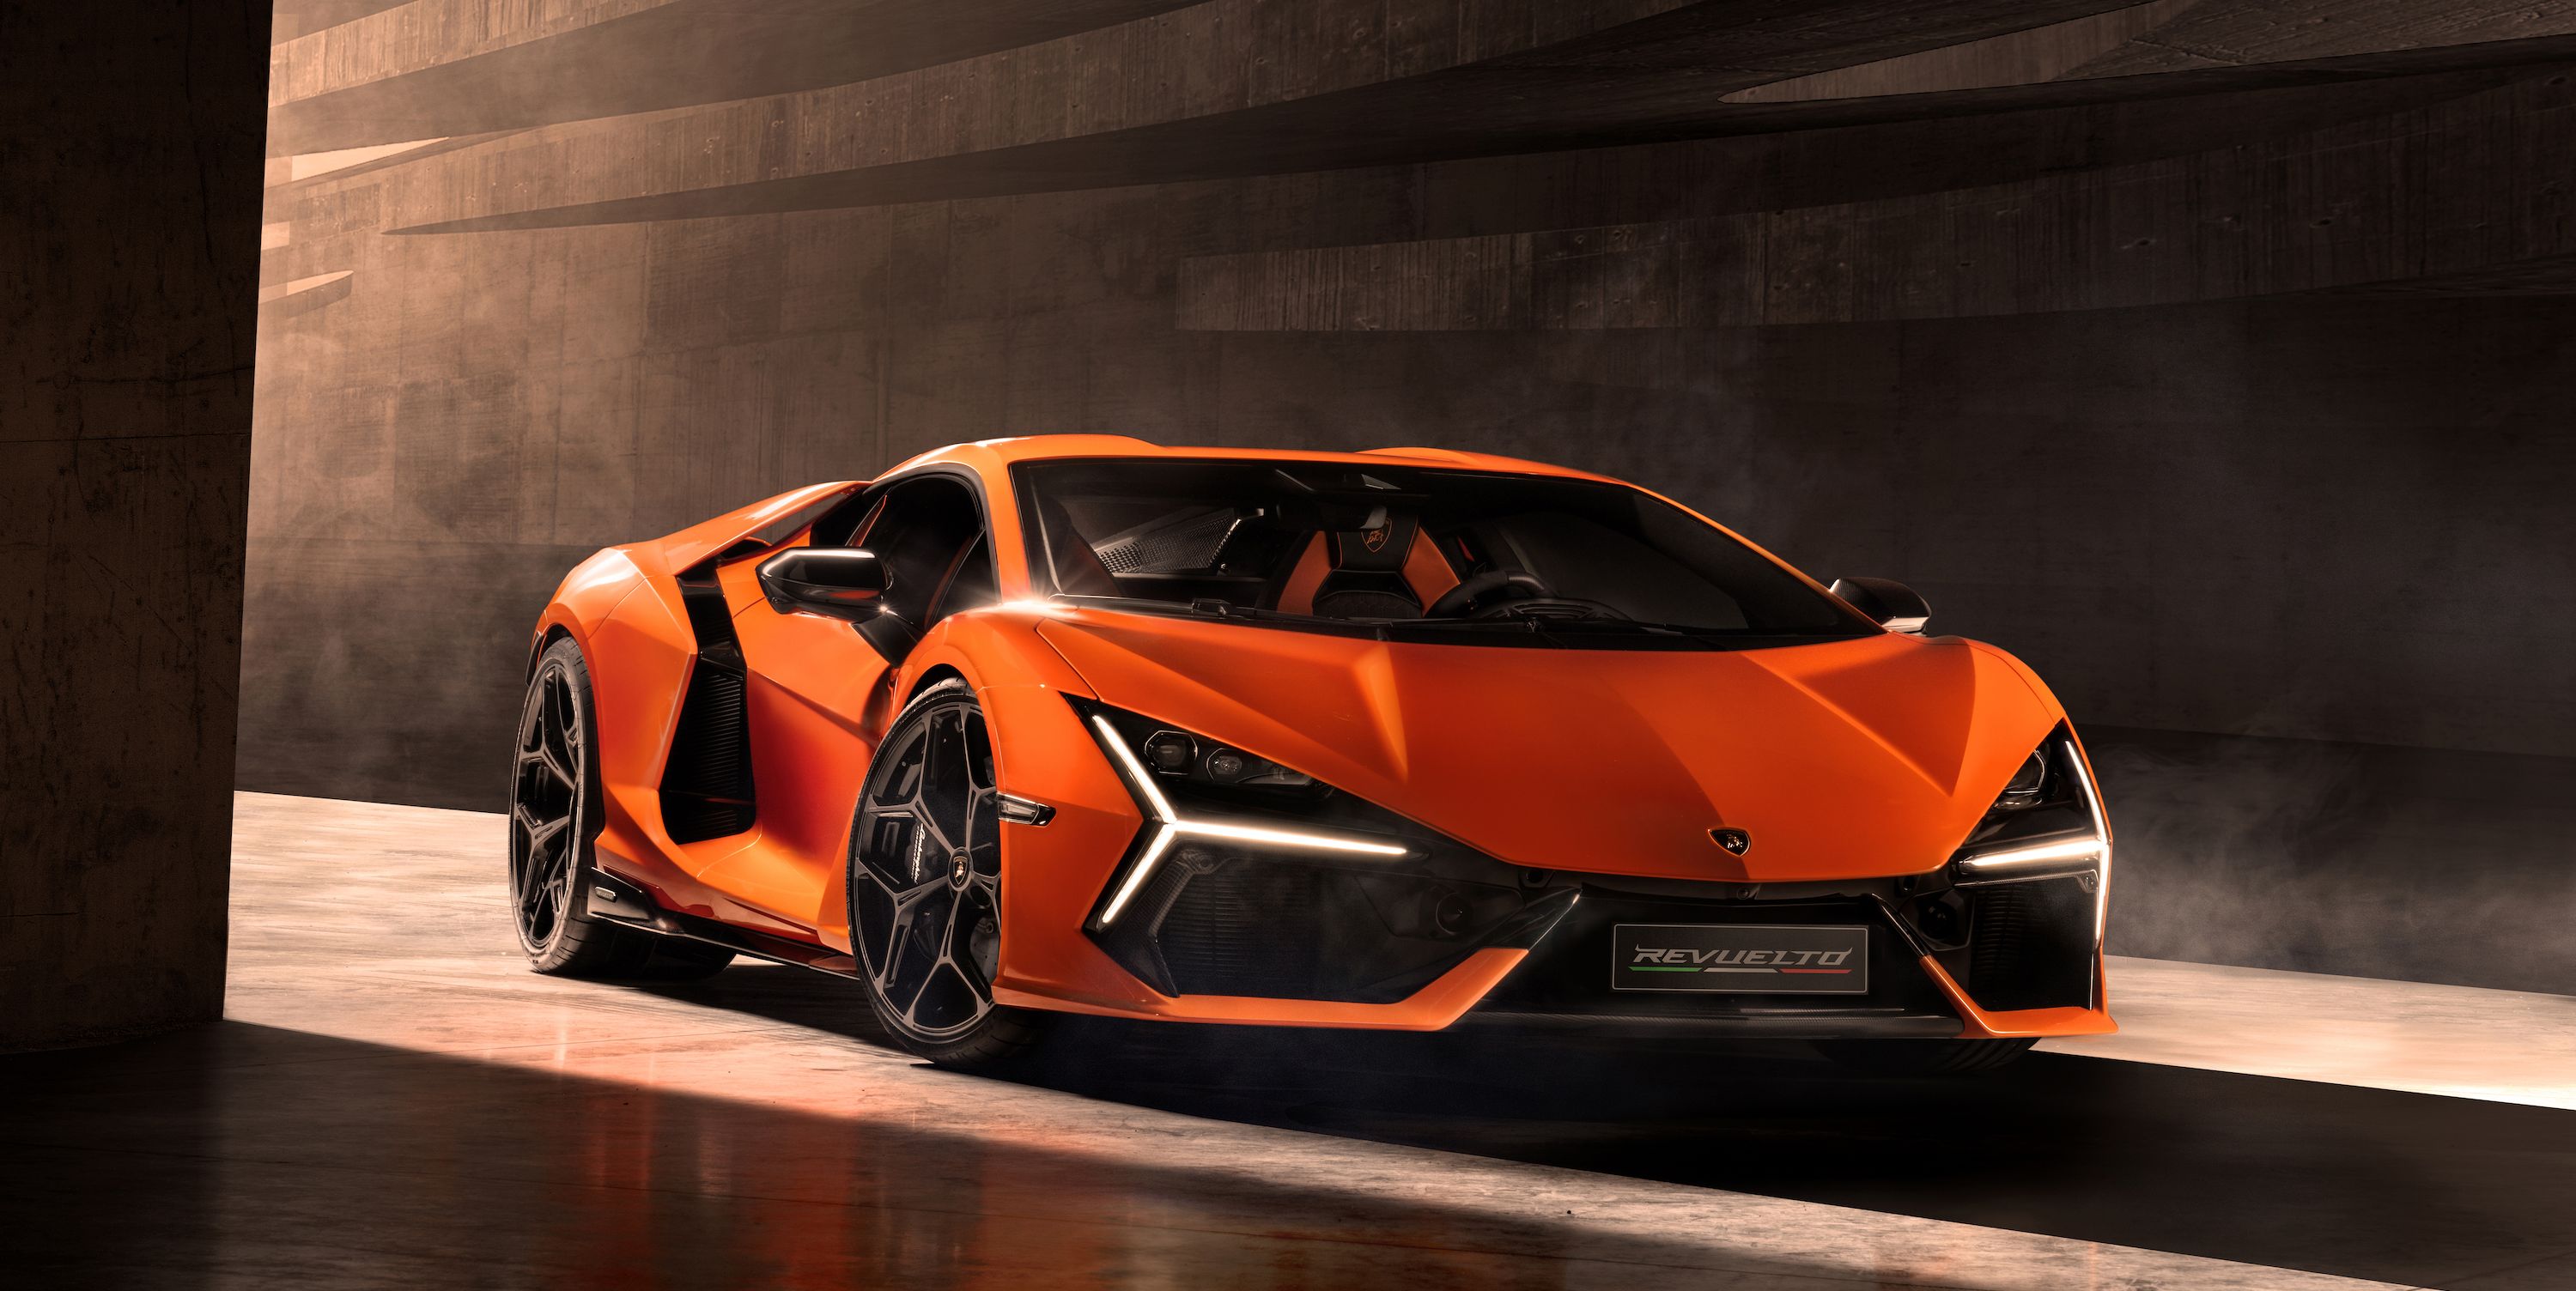 Revuelto: The 1001-HP Hybrid V-12 Future of Lamborghini